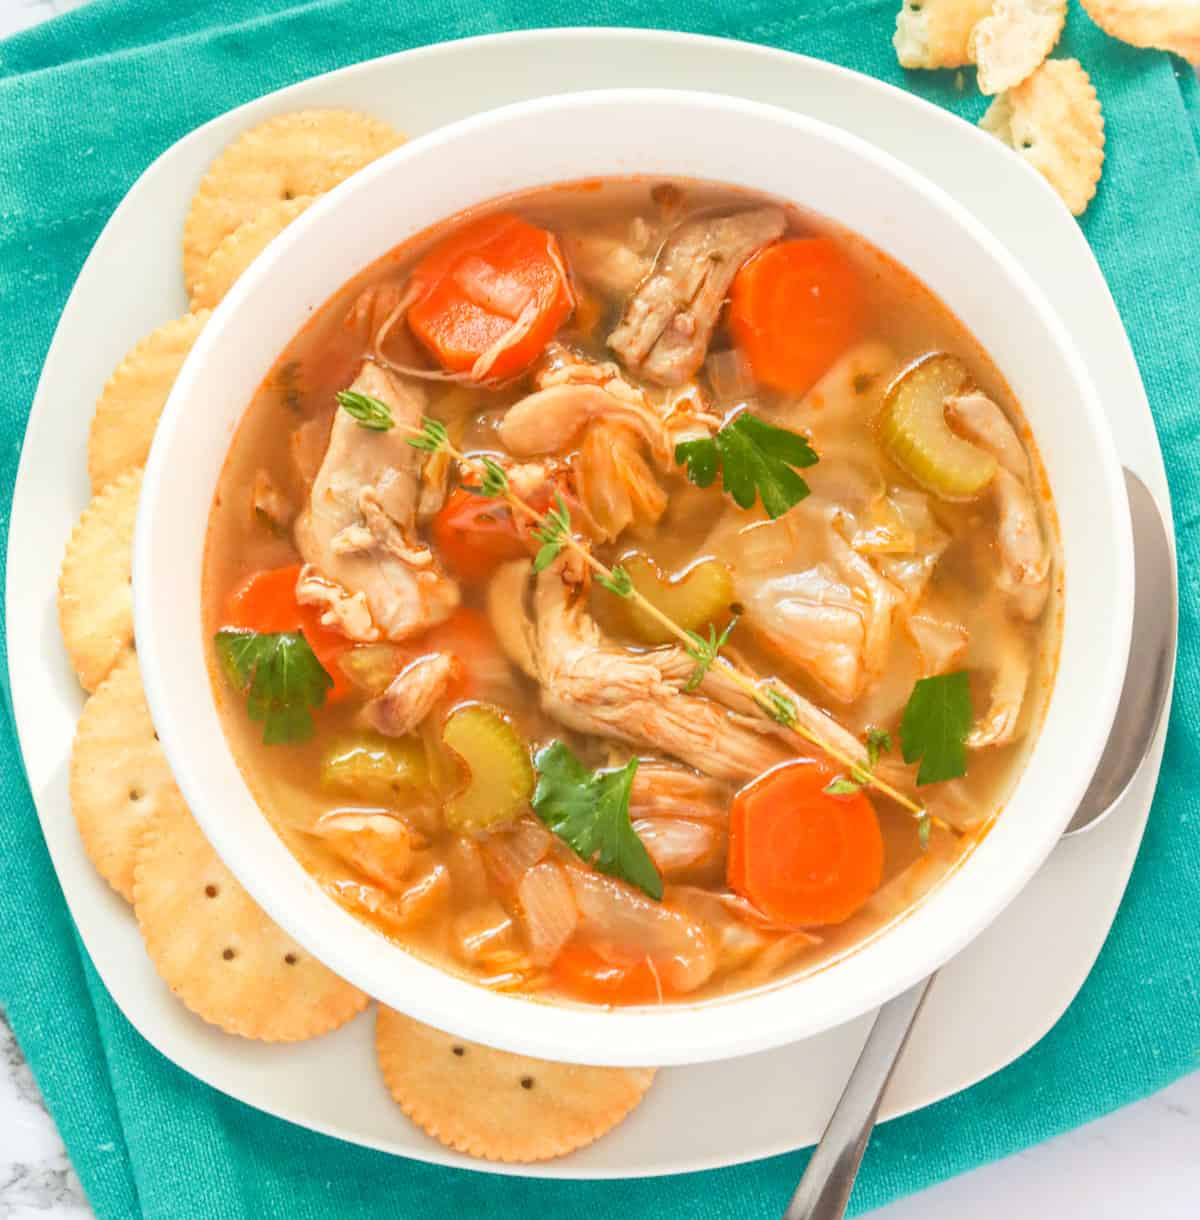 Soupe au poulet et au chou - Pourtant, une soupe satisfaisante devient la nourriture réconfortante de tout le monde